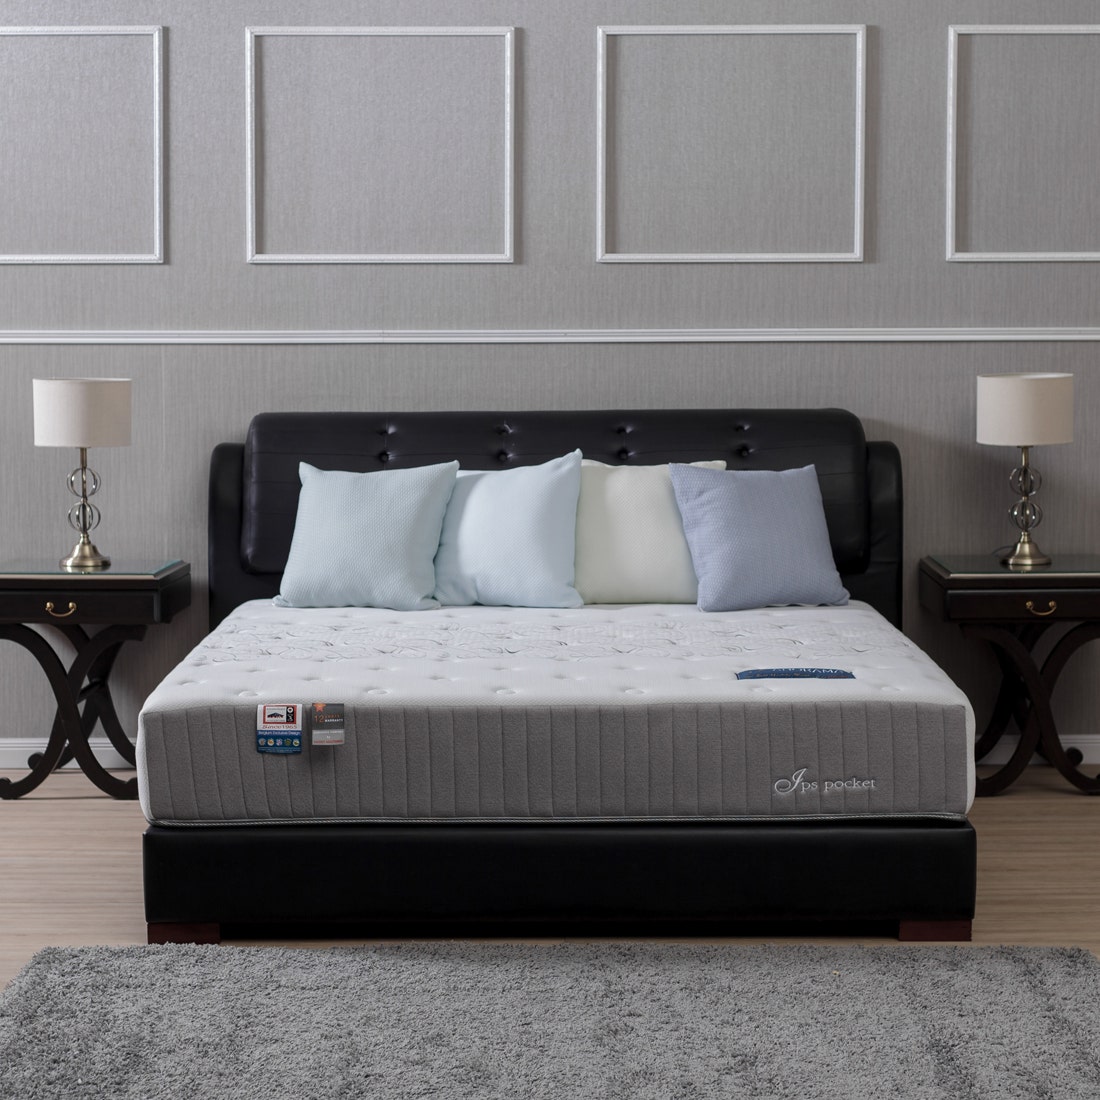 39001269-mattress-bedding-mattresses-pocket-spring-mattress-31